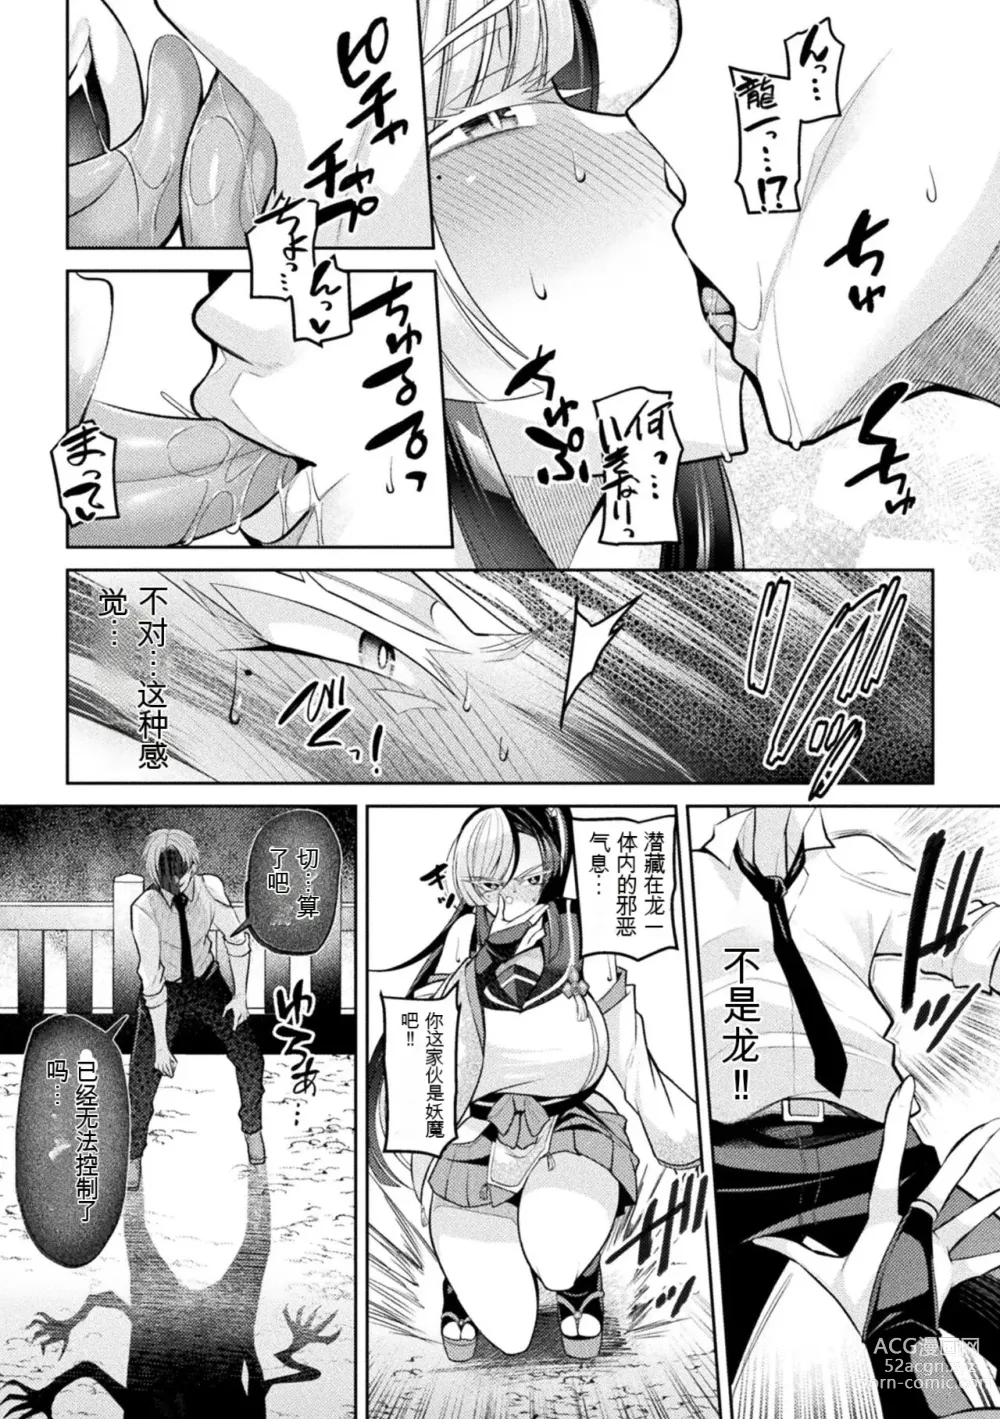 Page 5 of manga Reibaishi Fubuki no Jikenbo ~Kairaku ni Toke Ochiru Sekka~